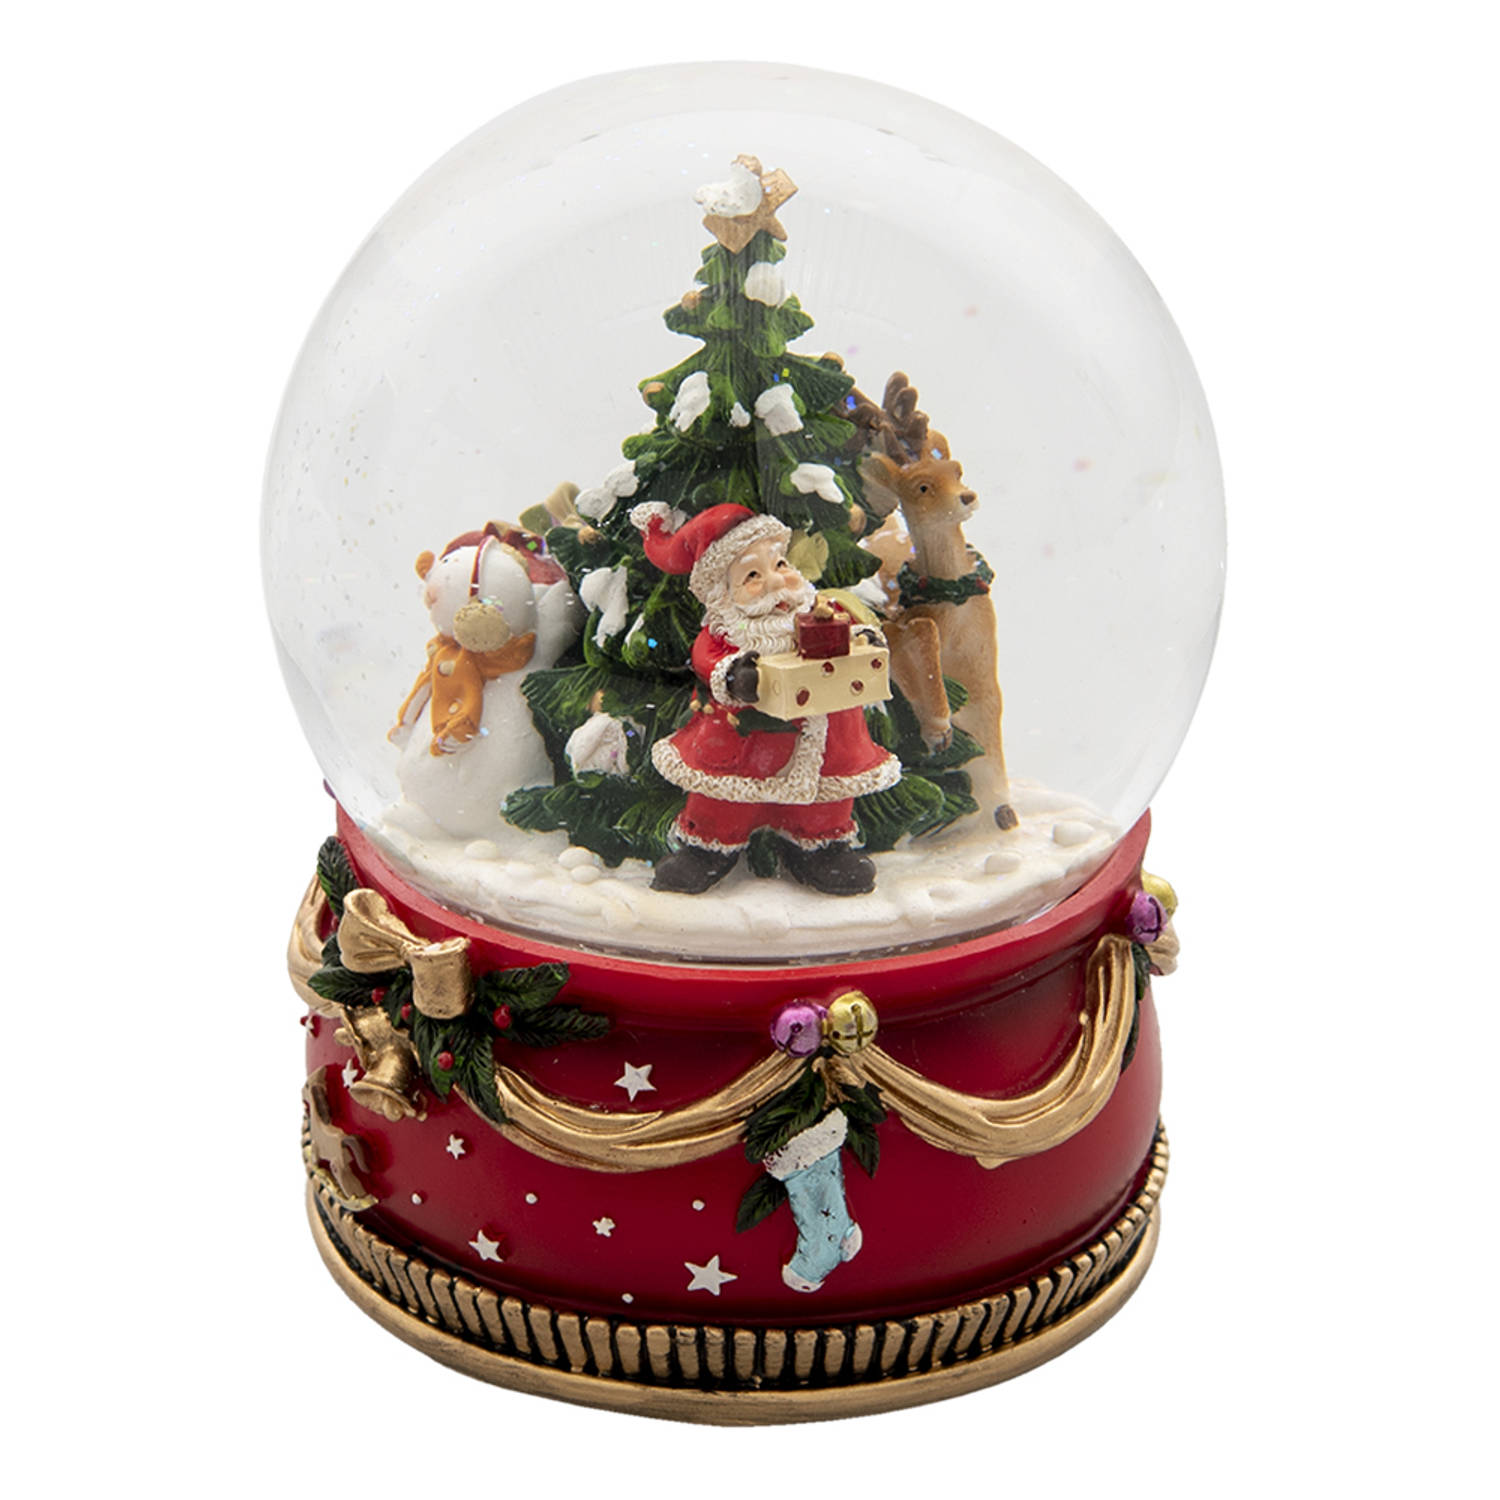 HAES DECO - Sneeuwbol met Kerstman - Formaat Ø 15x20 cm / 2xAA - Kleur Rood - Materiaal Polyresin / Glas - Kerst Figuur, Kerstdecoratie, Schudbol